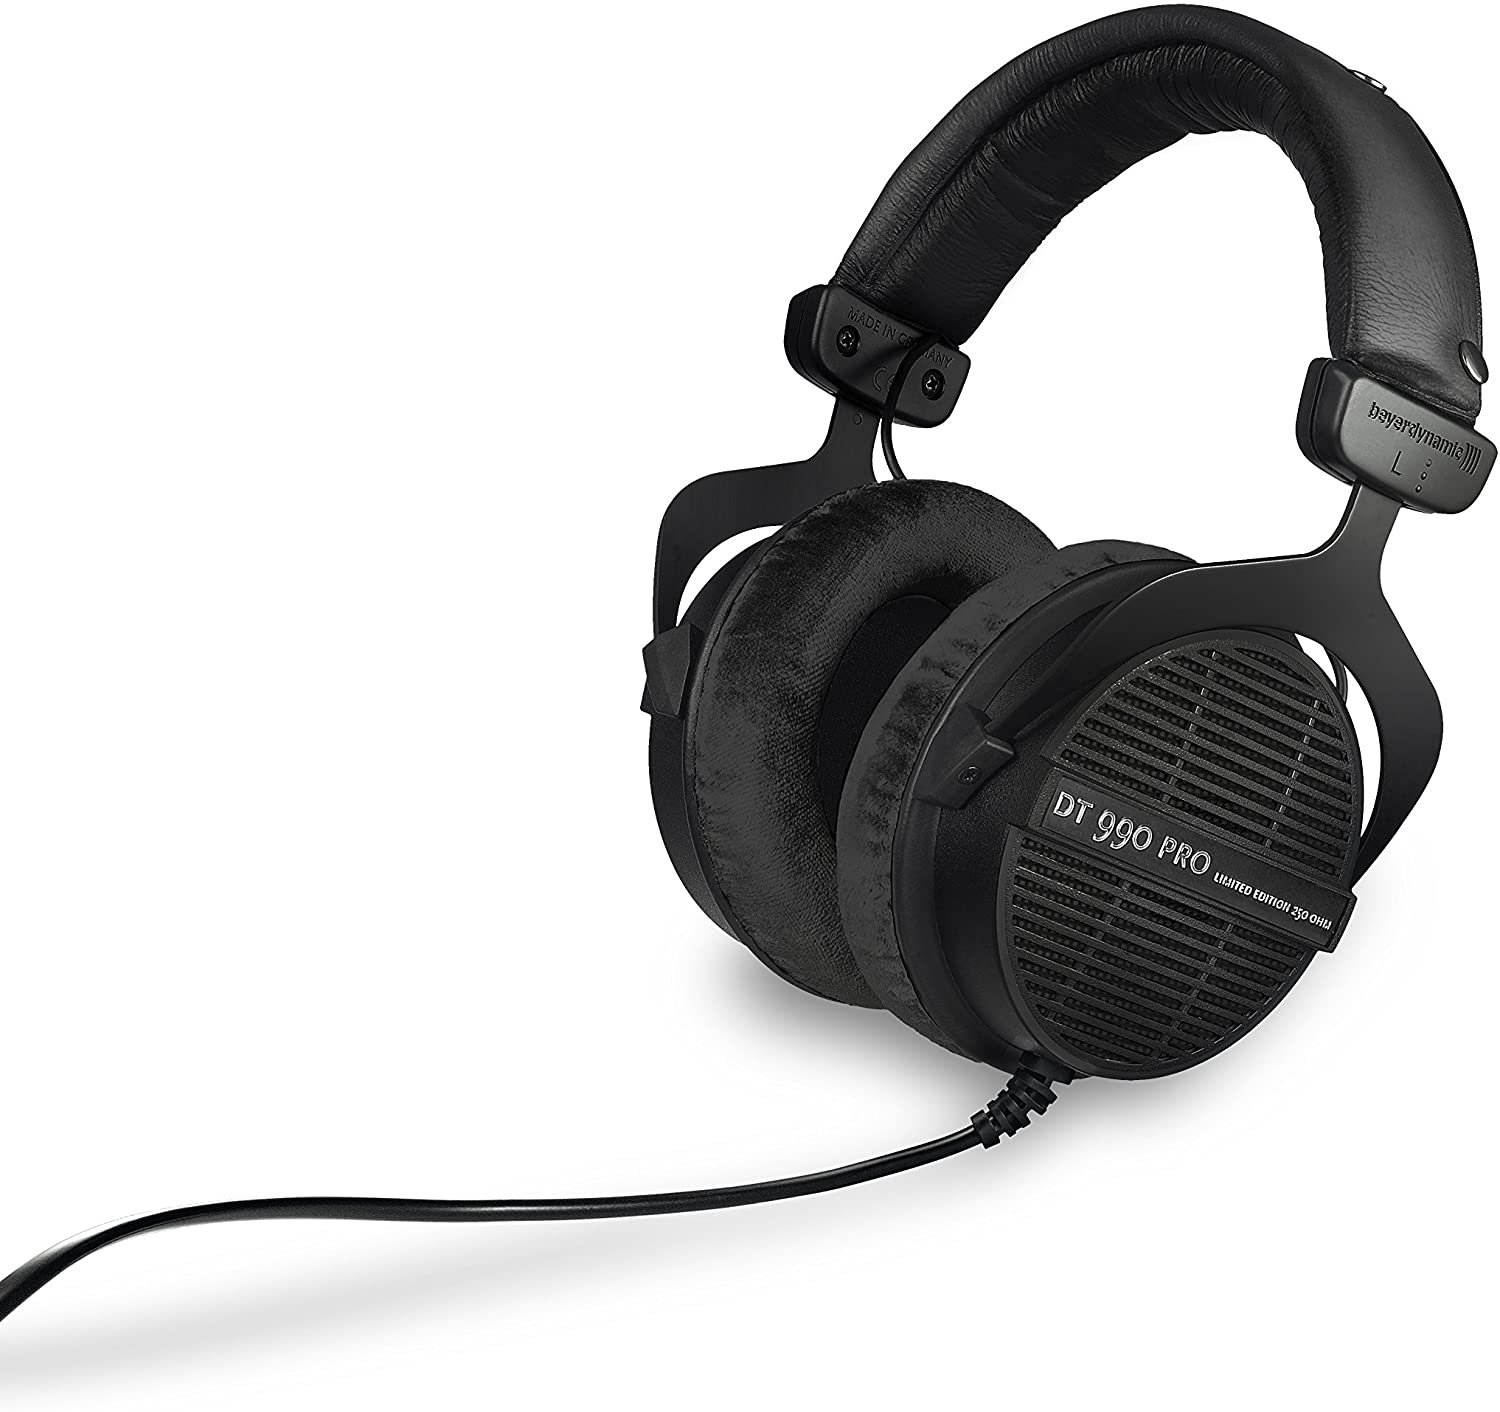 Beyerdynamic DT 990 Pro Headphones Best Review In 2022 | Zero To Drum